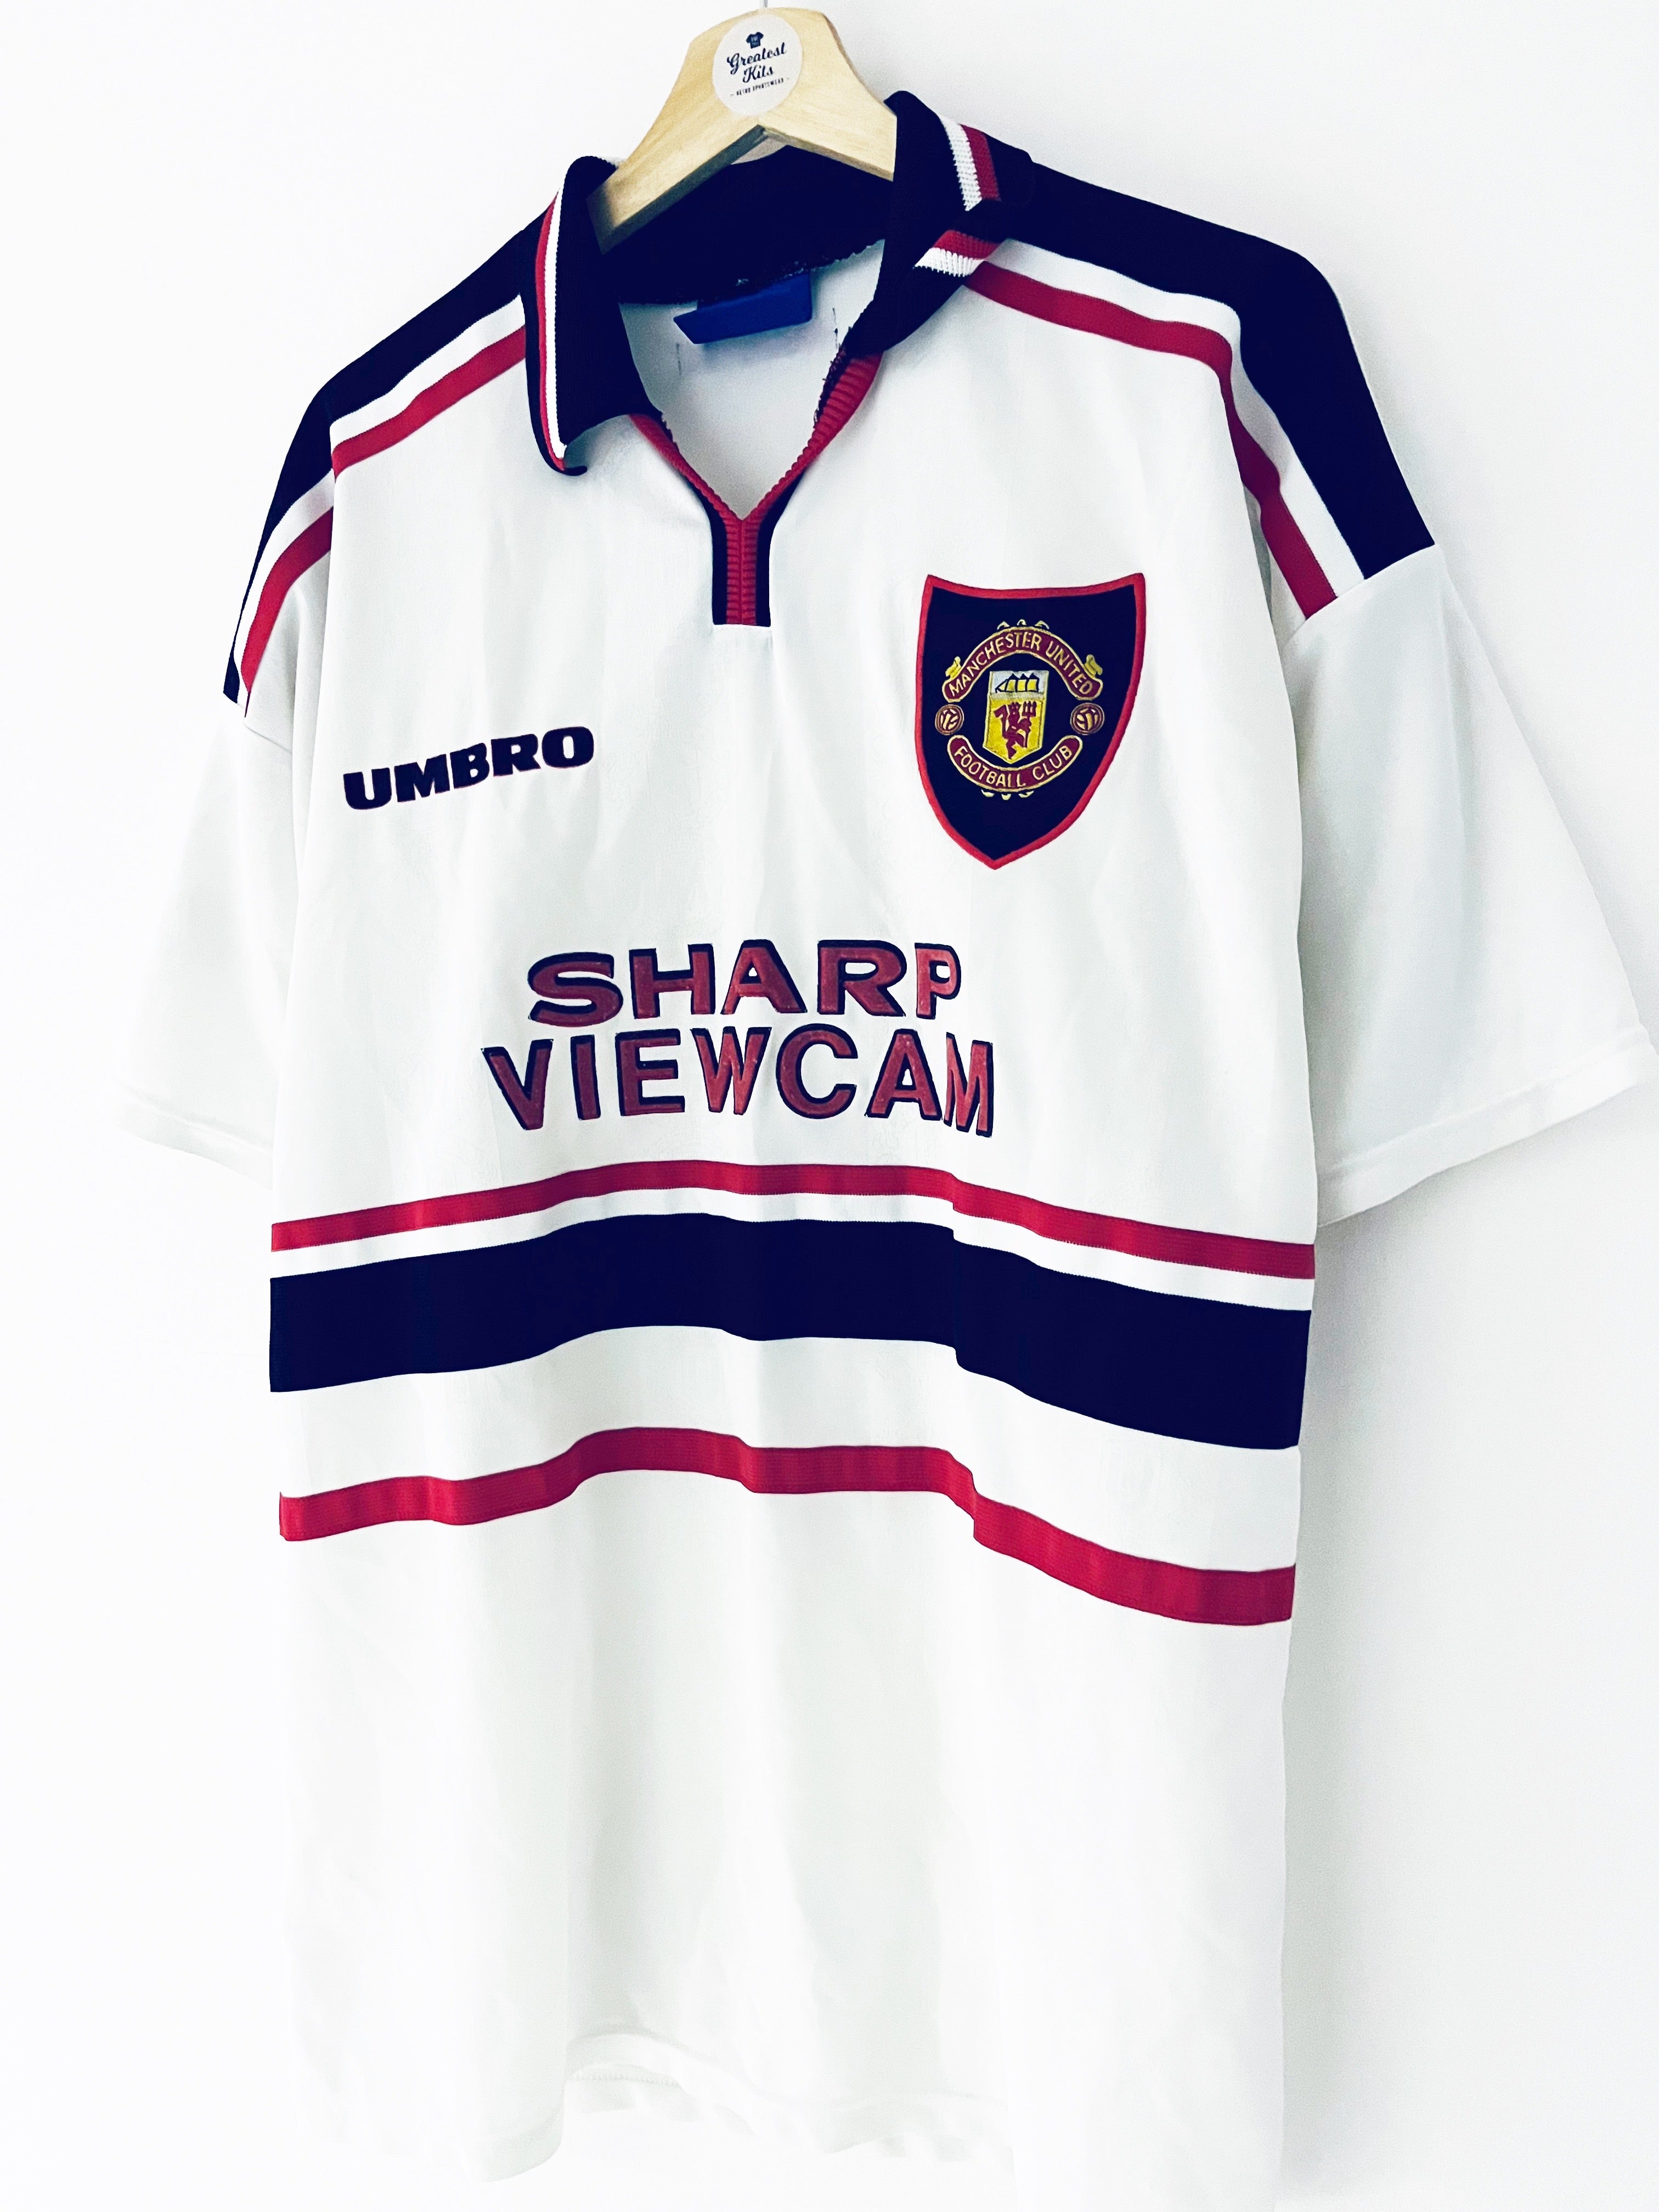 1997/99 Manchester United Away Shirt (XL) 8.5/10